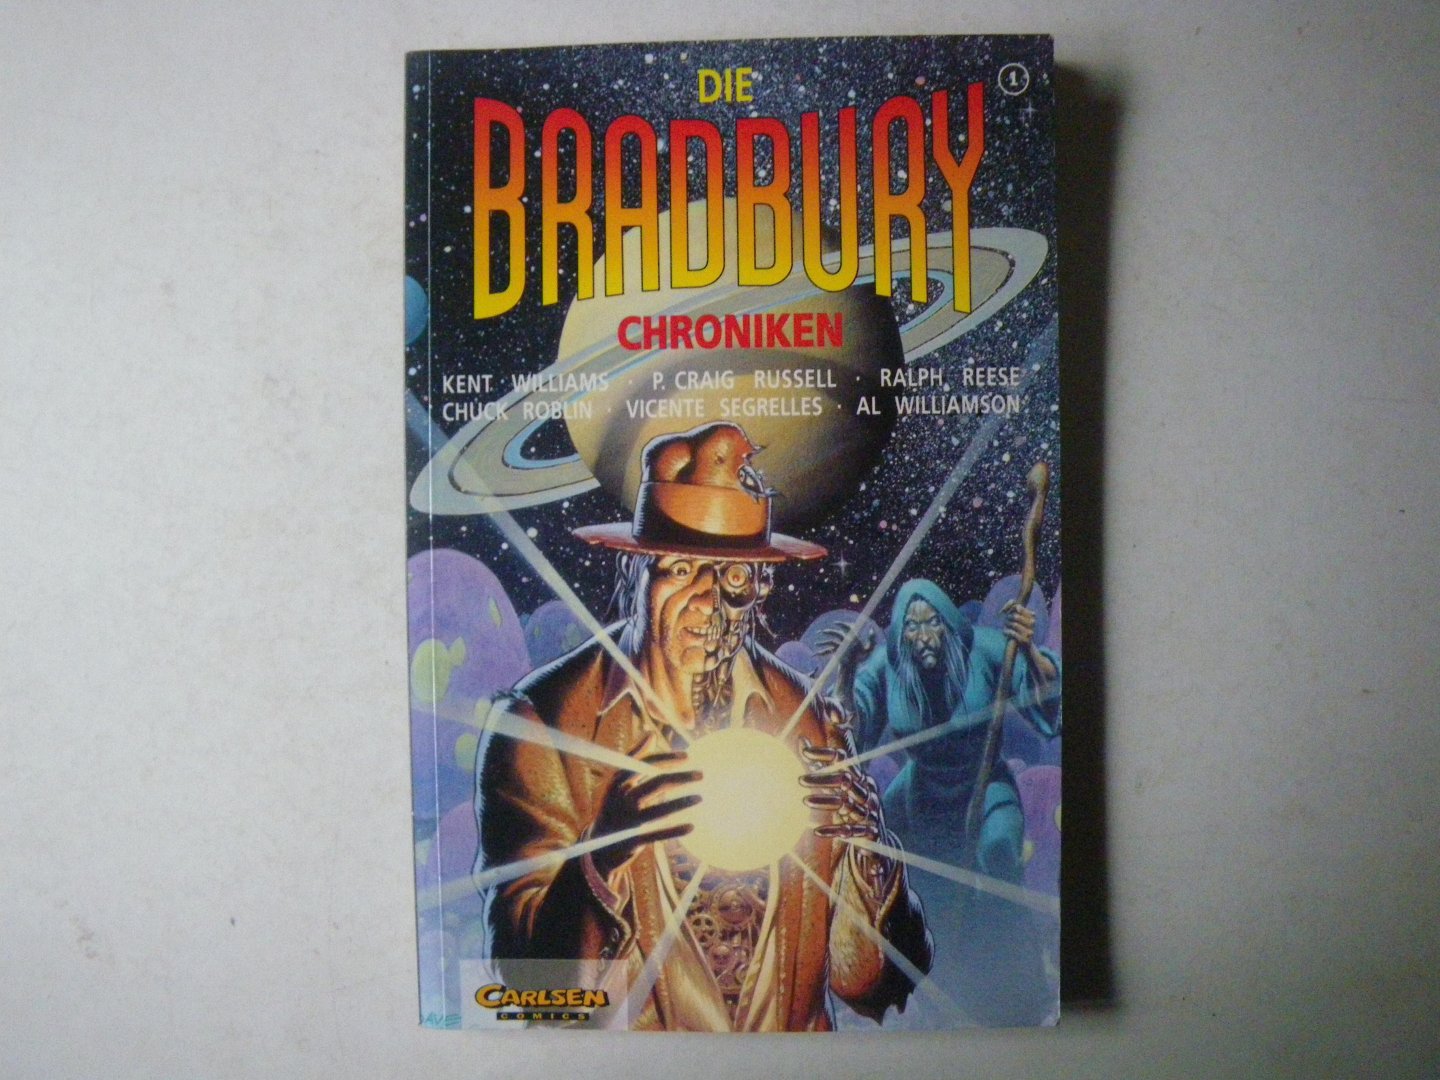 Ray Bradbury (Autor), Kent Williams (Autor), P. C. Russell (Autor), Ralph Reese (Autor) - Die Bradbury-Chroniken, Bd.1